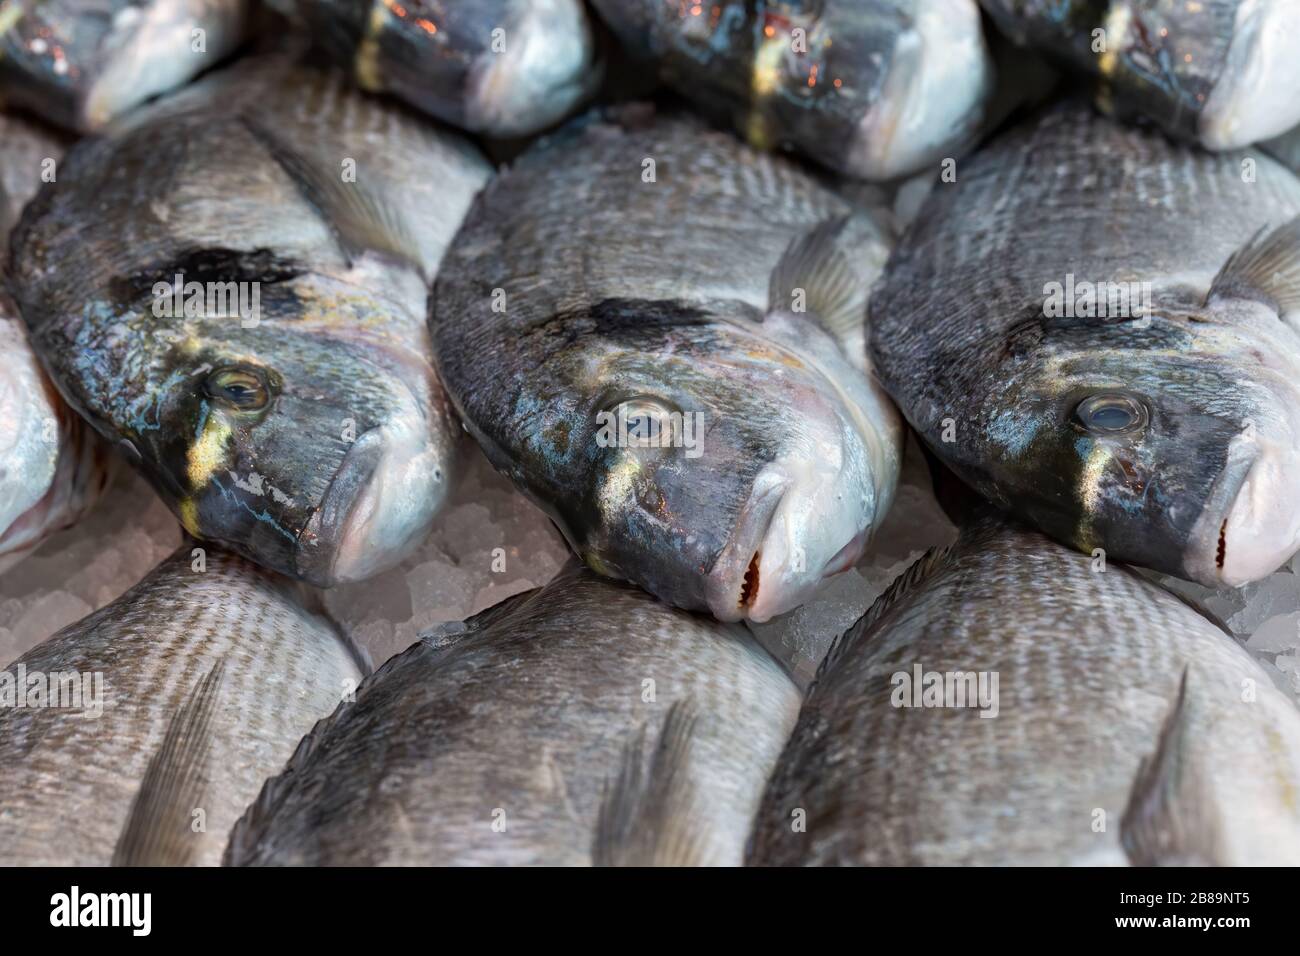 L'orata di mare fresca è in mostra su una bancarella del mercato britannico dei pescatori Foto Stock